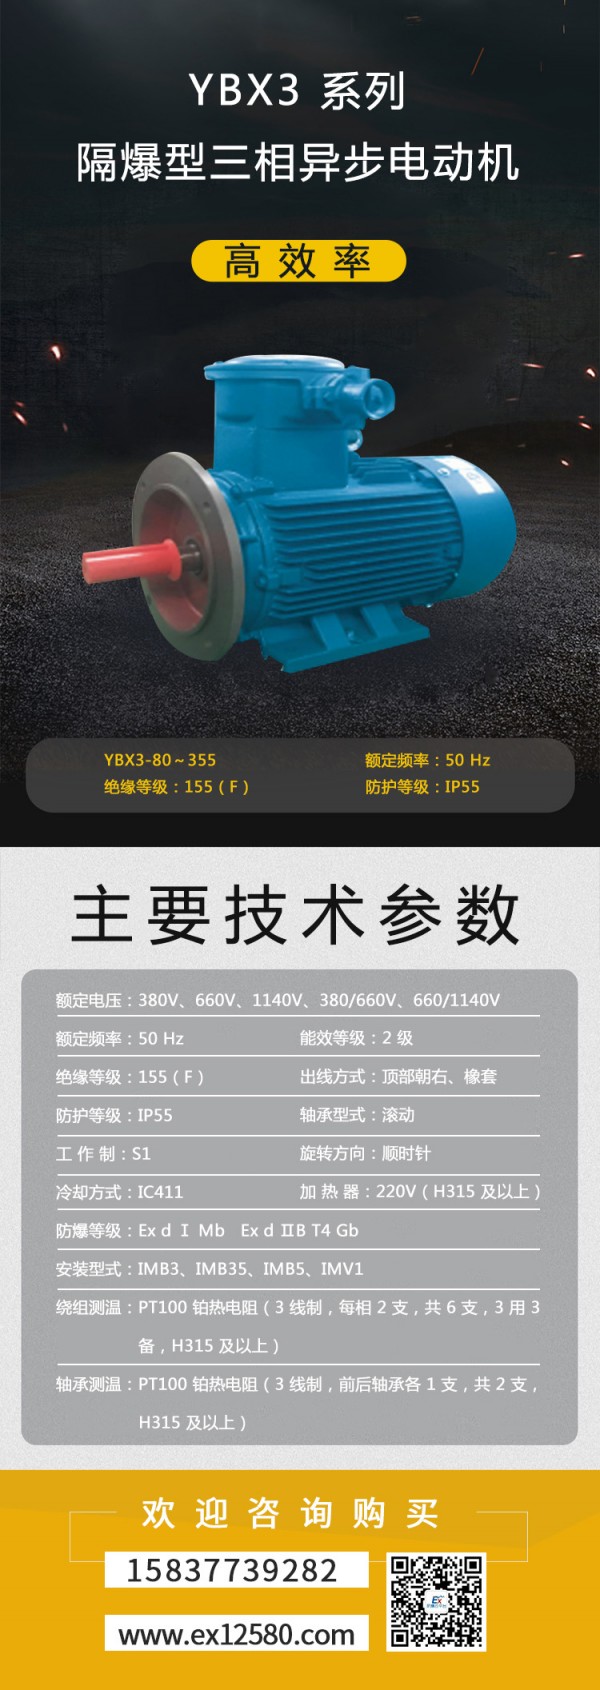 YBX3-系列高效率隔爆型三相异步电动机1-压缩